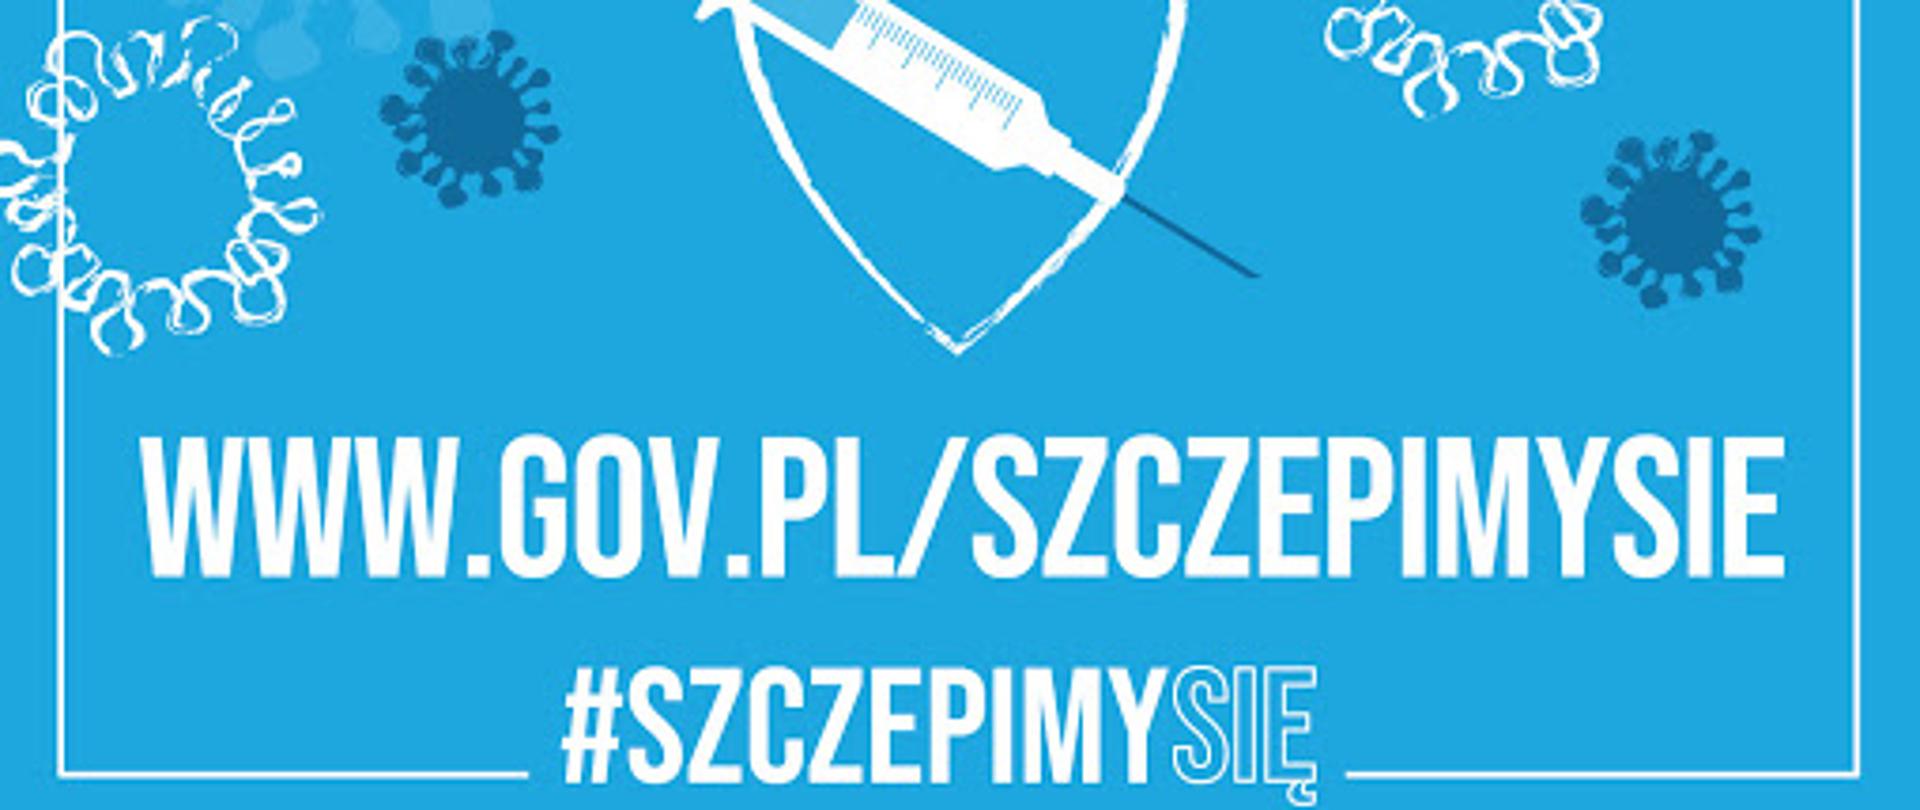 Na niebieskim tle symbole wirusa oraz strzykawki i igły ze szczepionką, a także napis www.gov.pl/szczepimysie